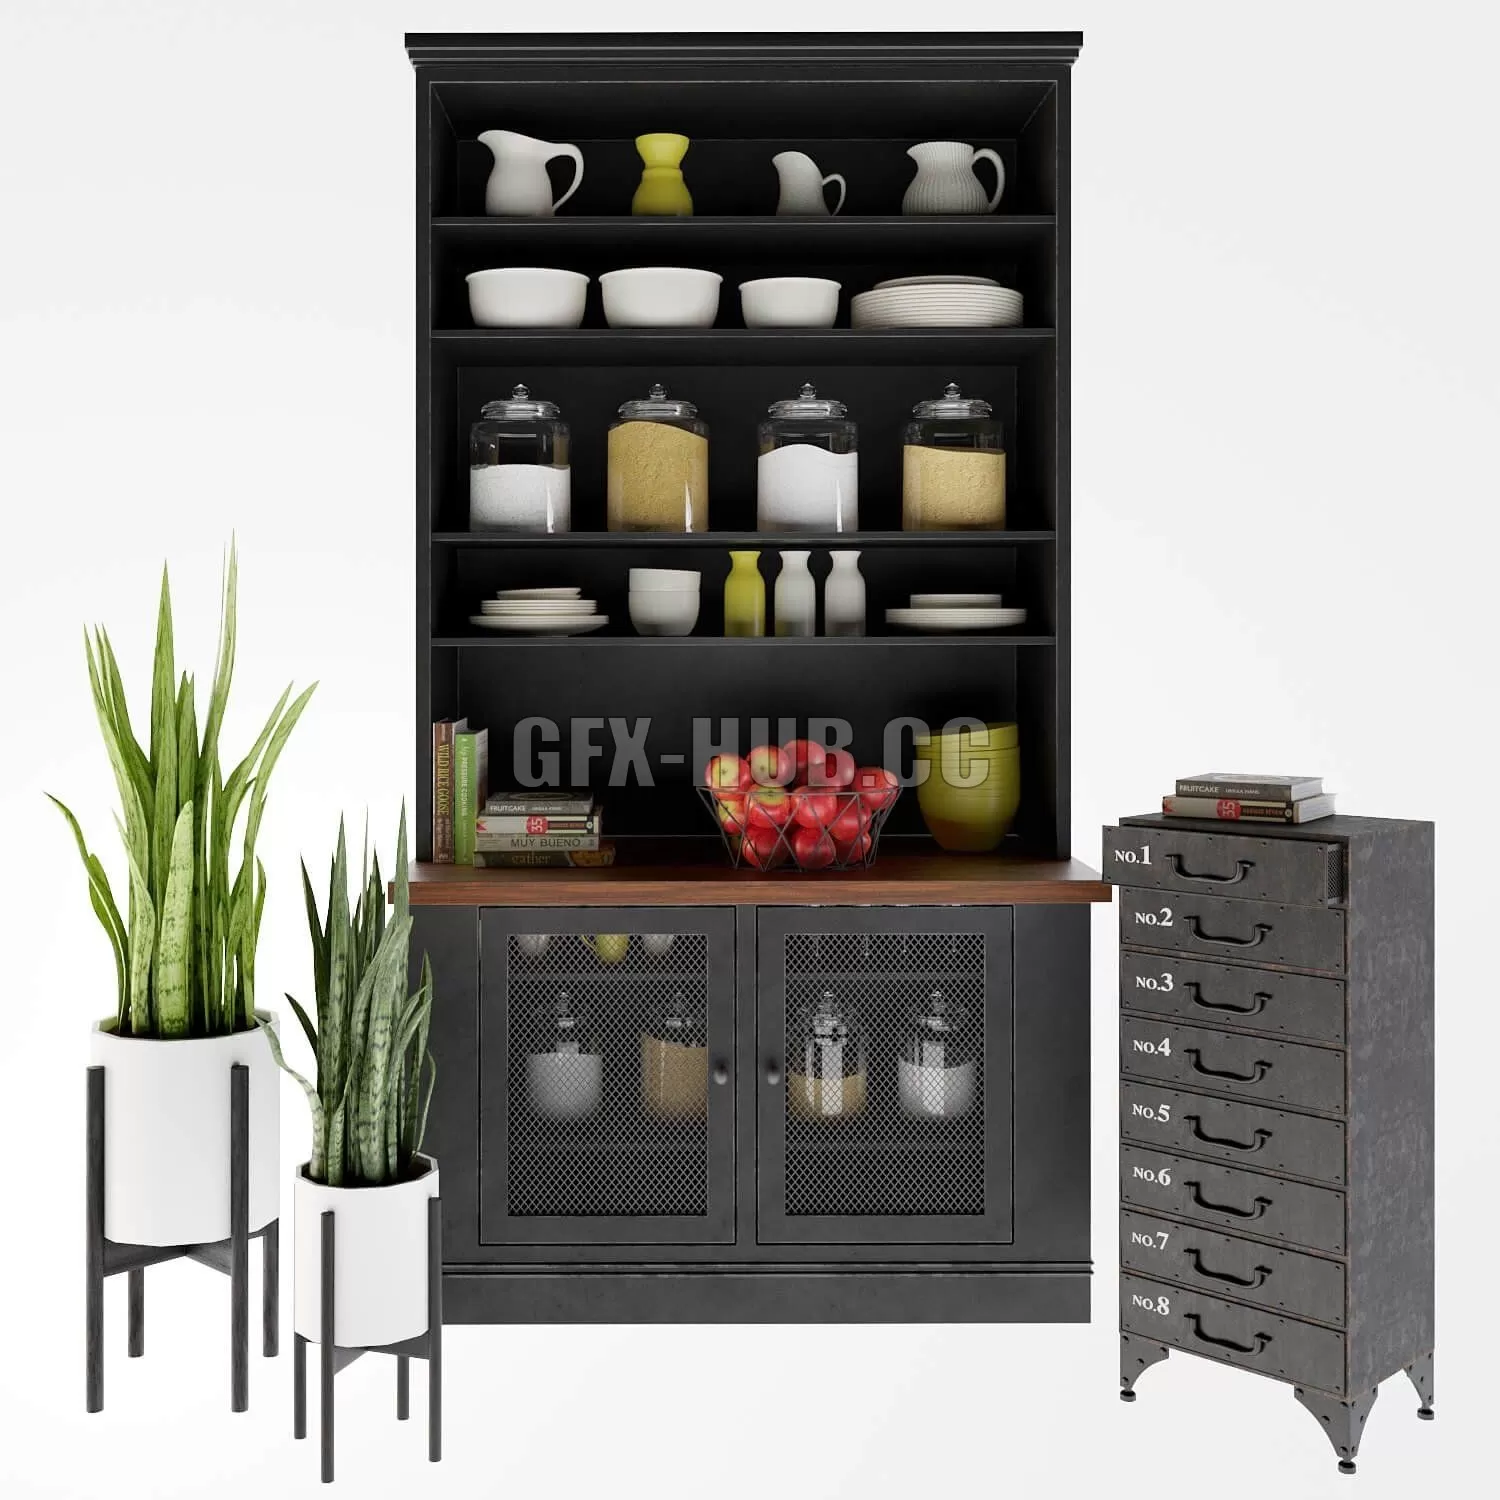 KITCHEN DECOR – Industrial Loft Rustic Iron 8 drawer dresser and kitchen decor set